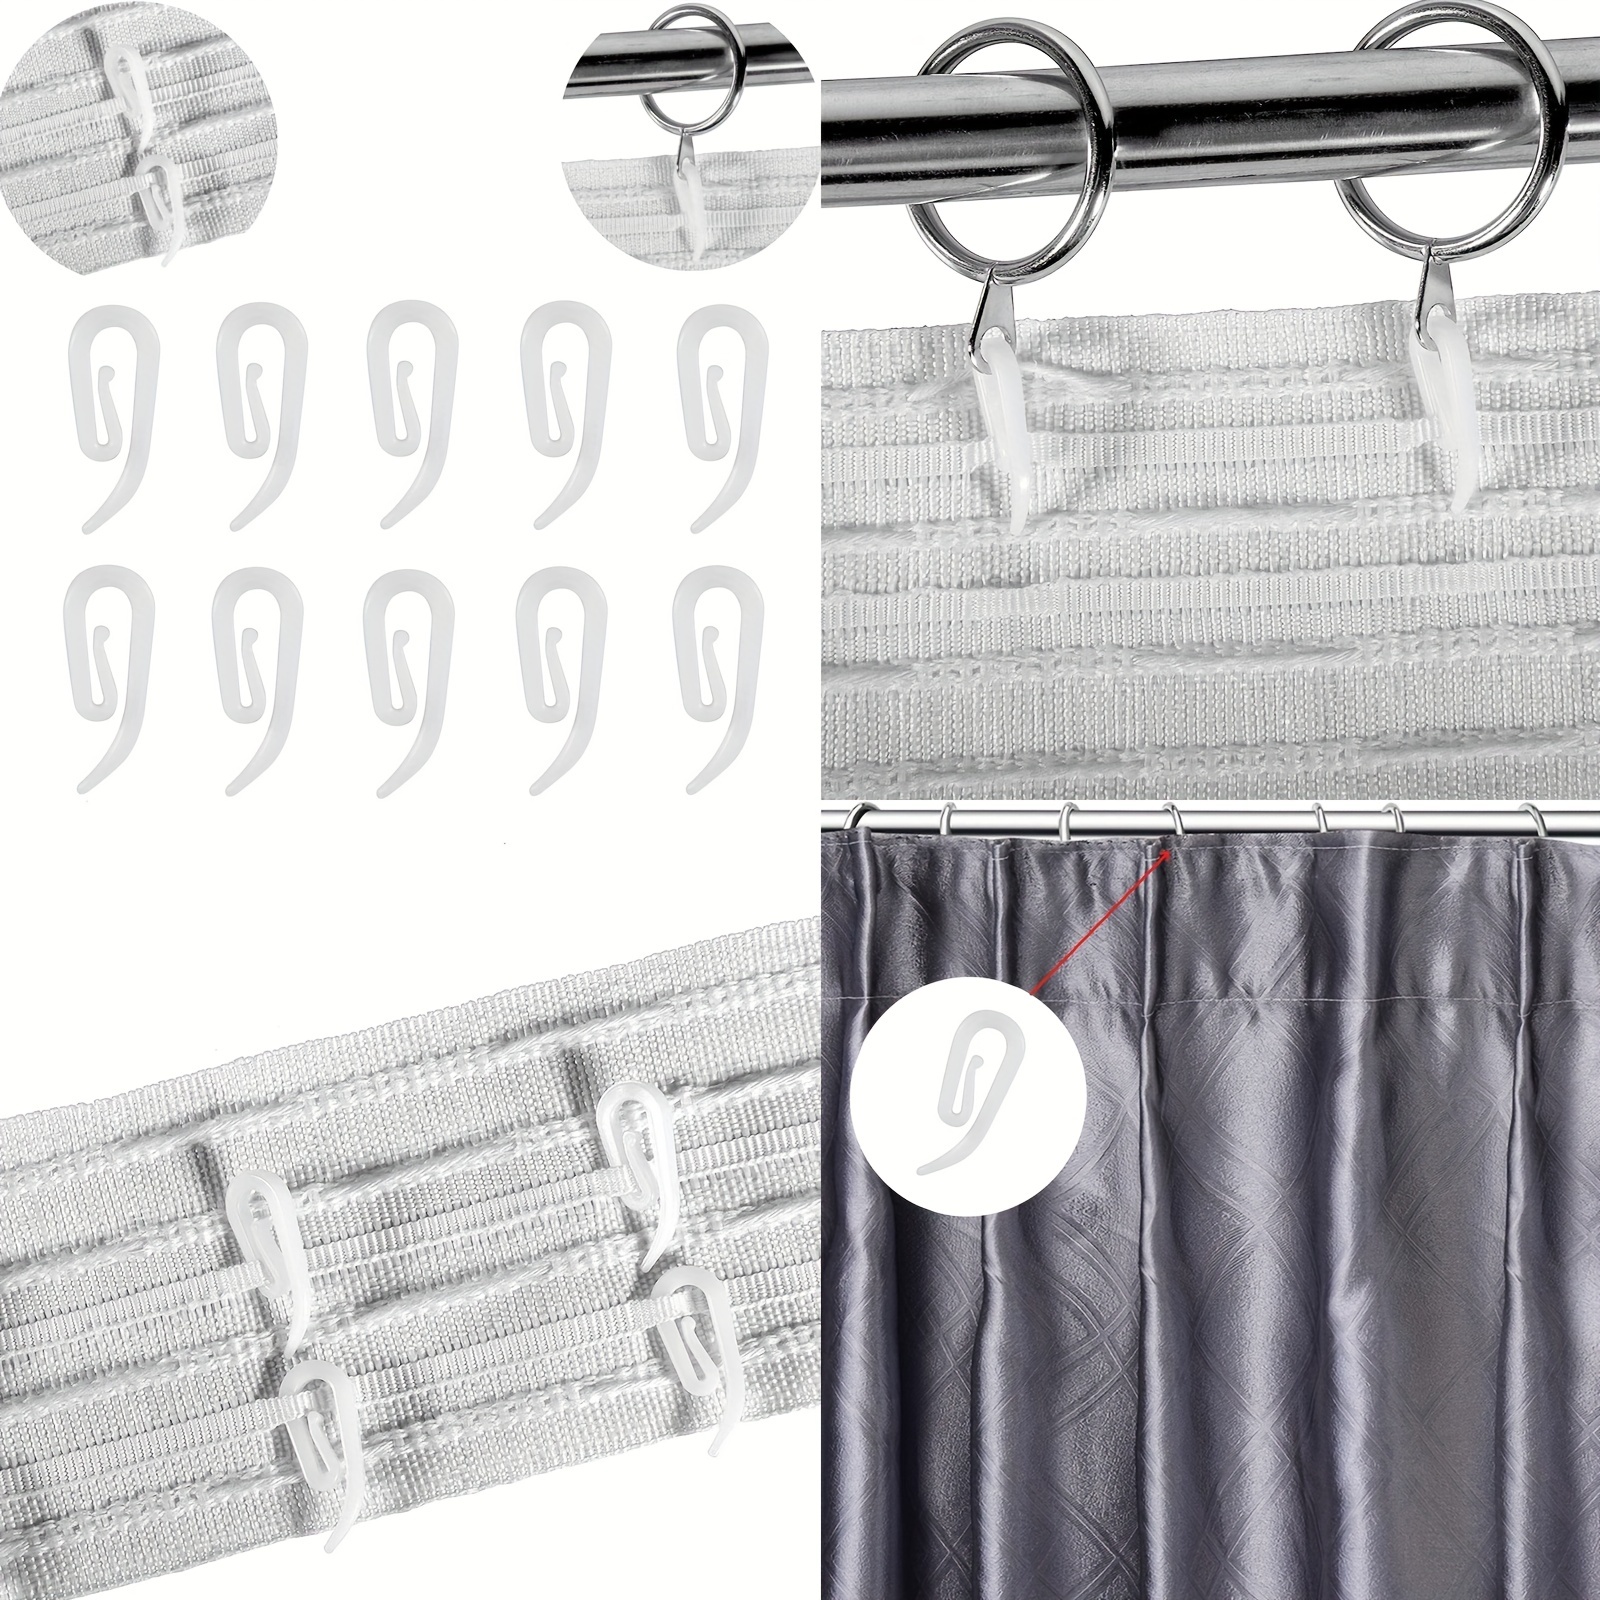 Comprar barras y anillas para las cortinas de baño